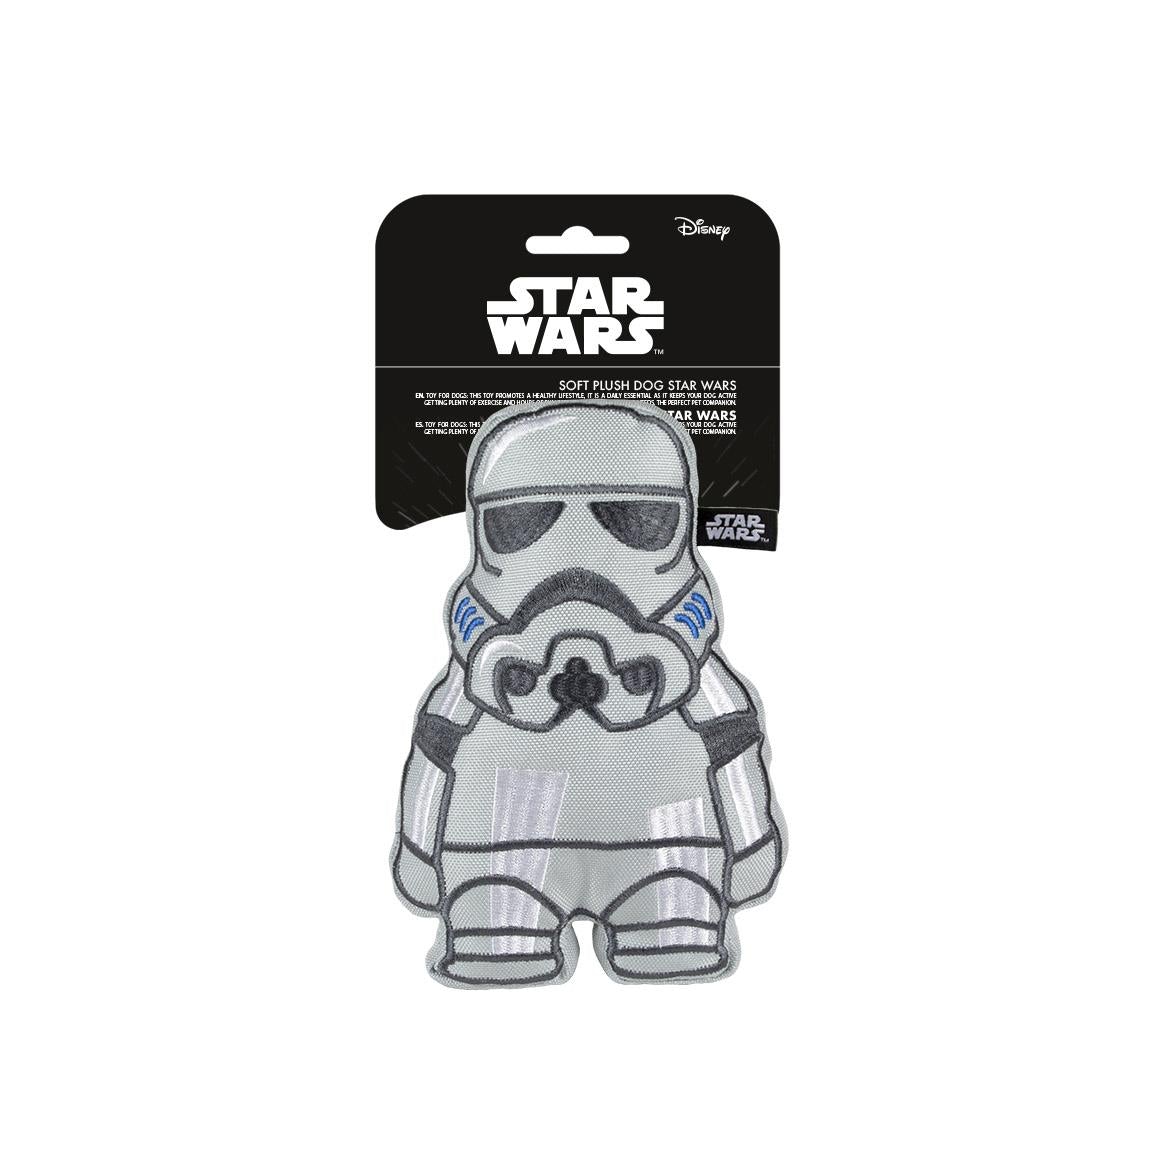 Star Wars - Dog Toy With Sound Stormtrooper - darkling.be